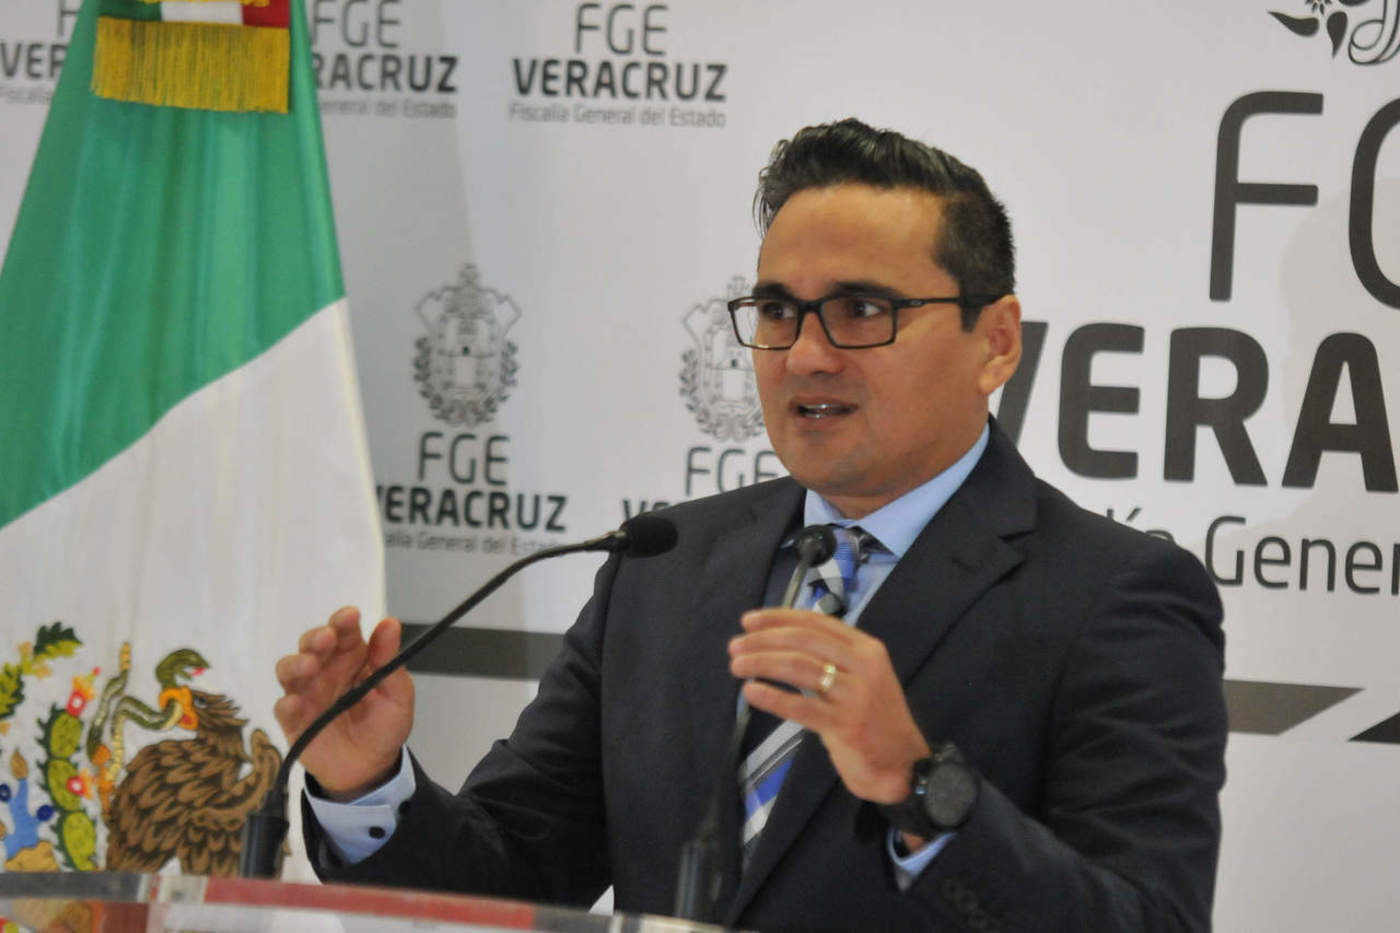 Fotógrafo secuestrado acusa al fiscal de Veracruz